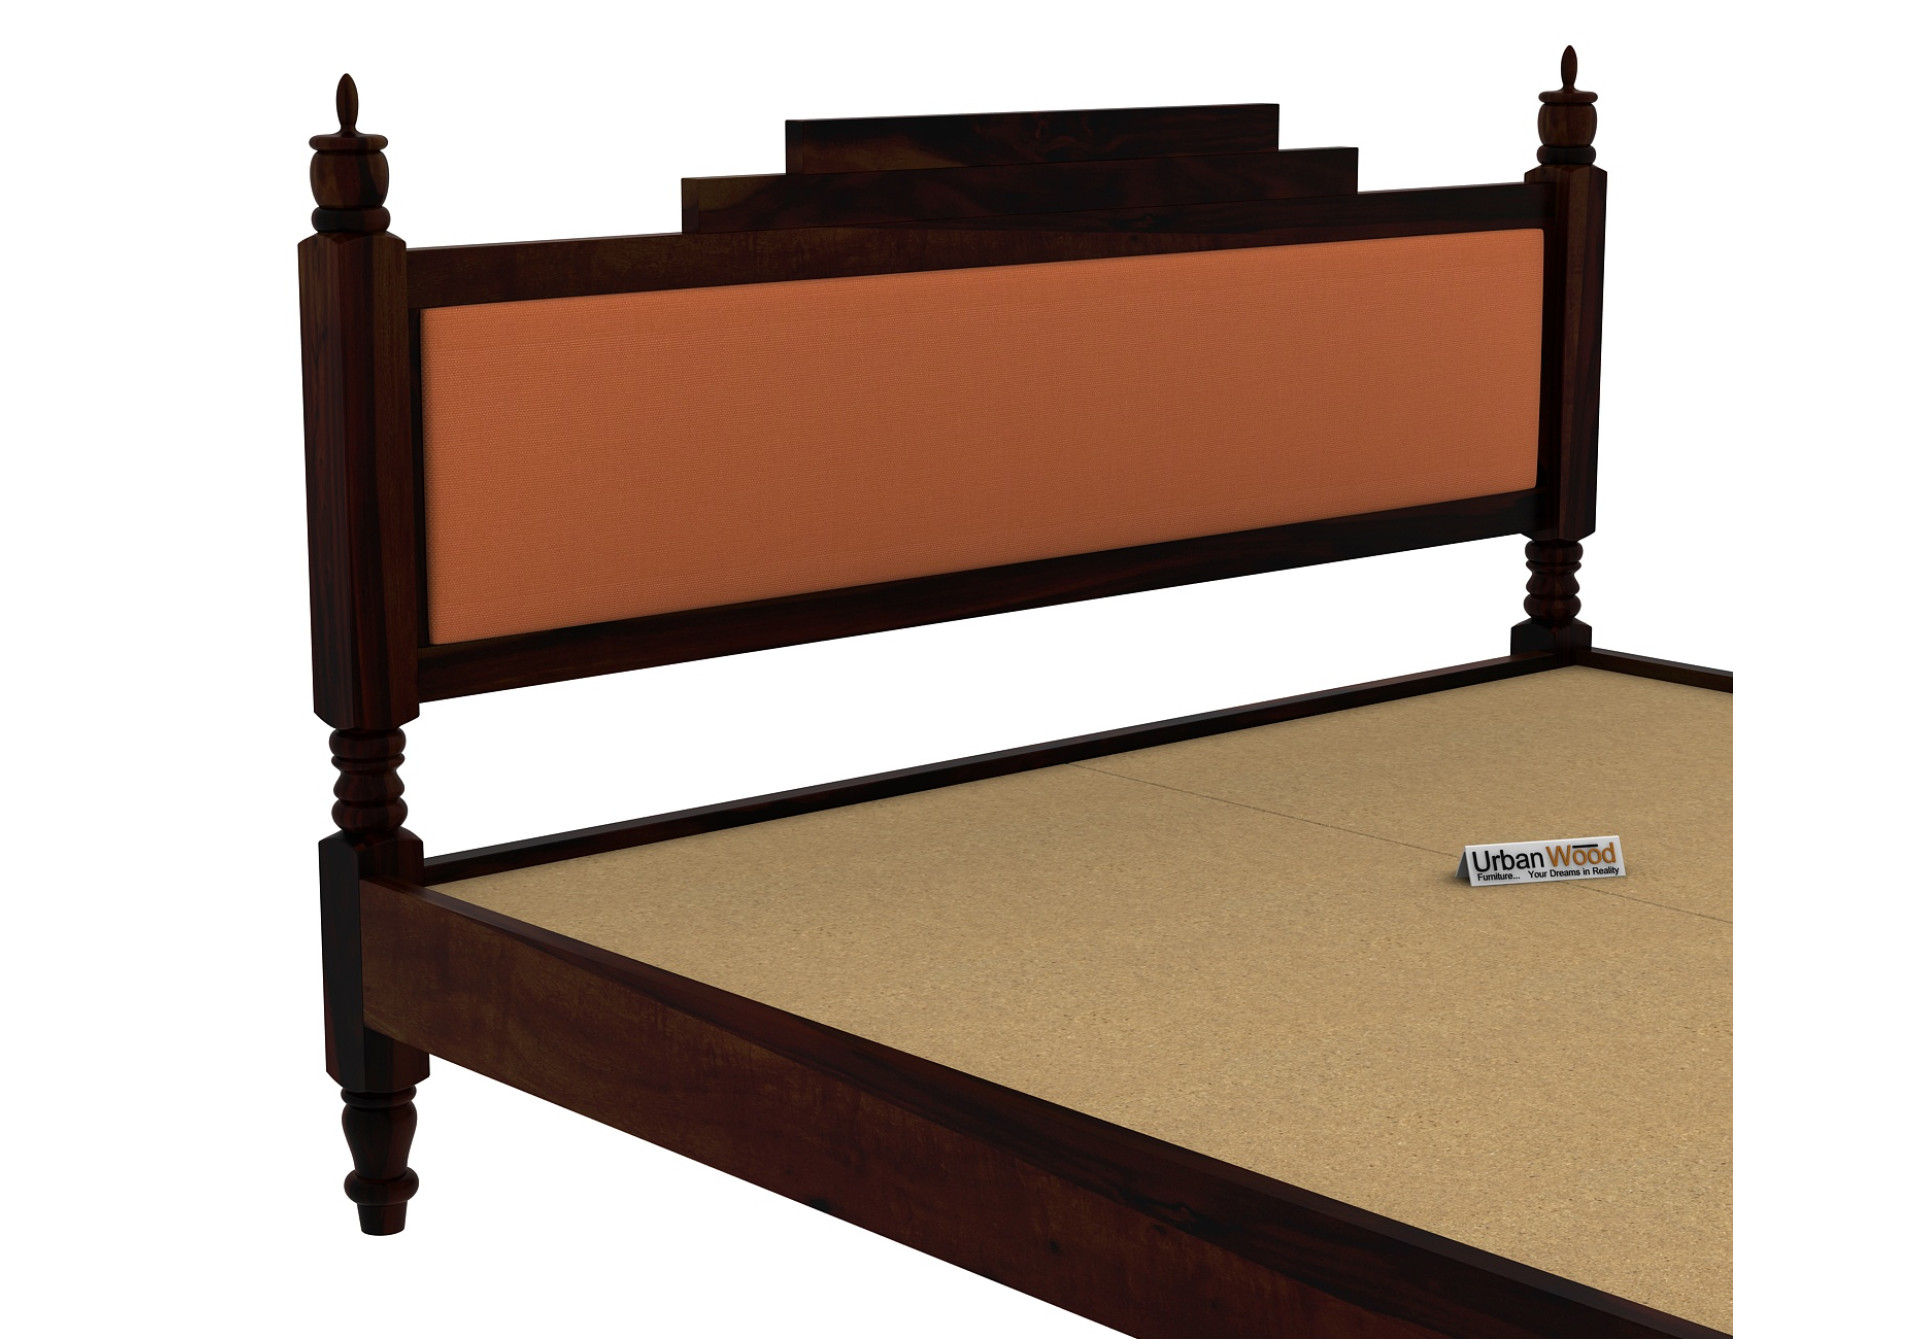 Jodhpuri Without Storage Bed (King Size, Walnut Finish)